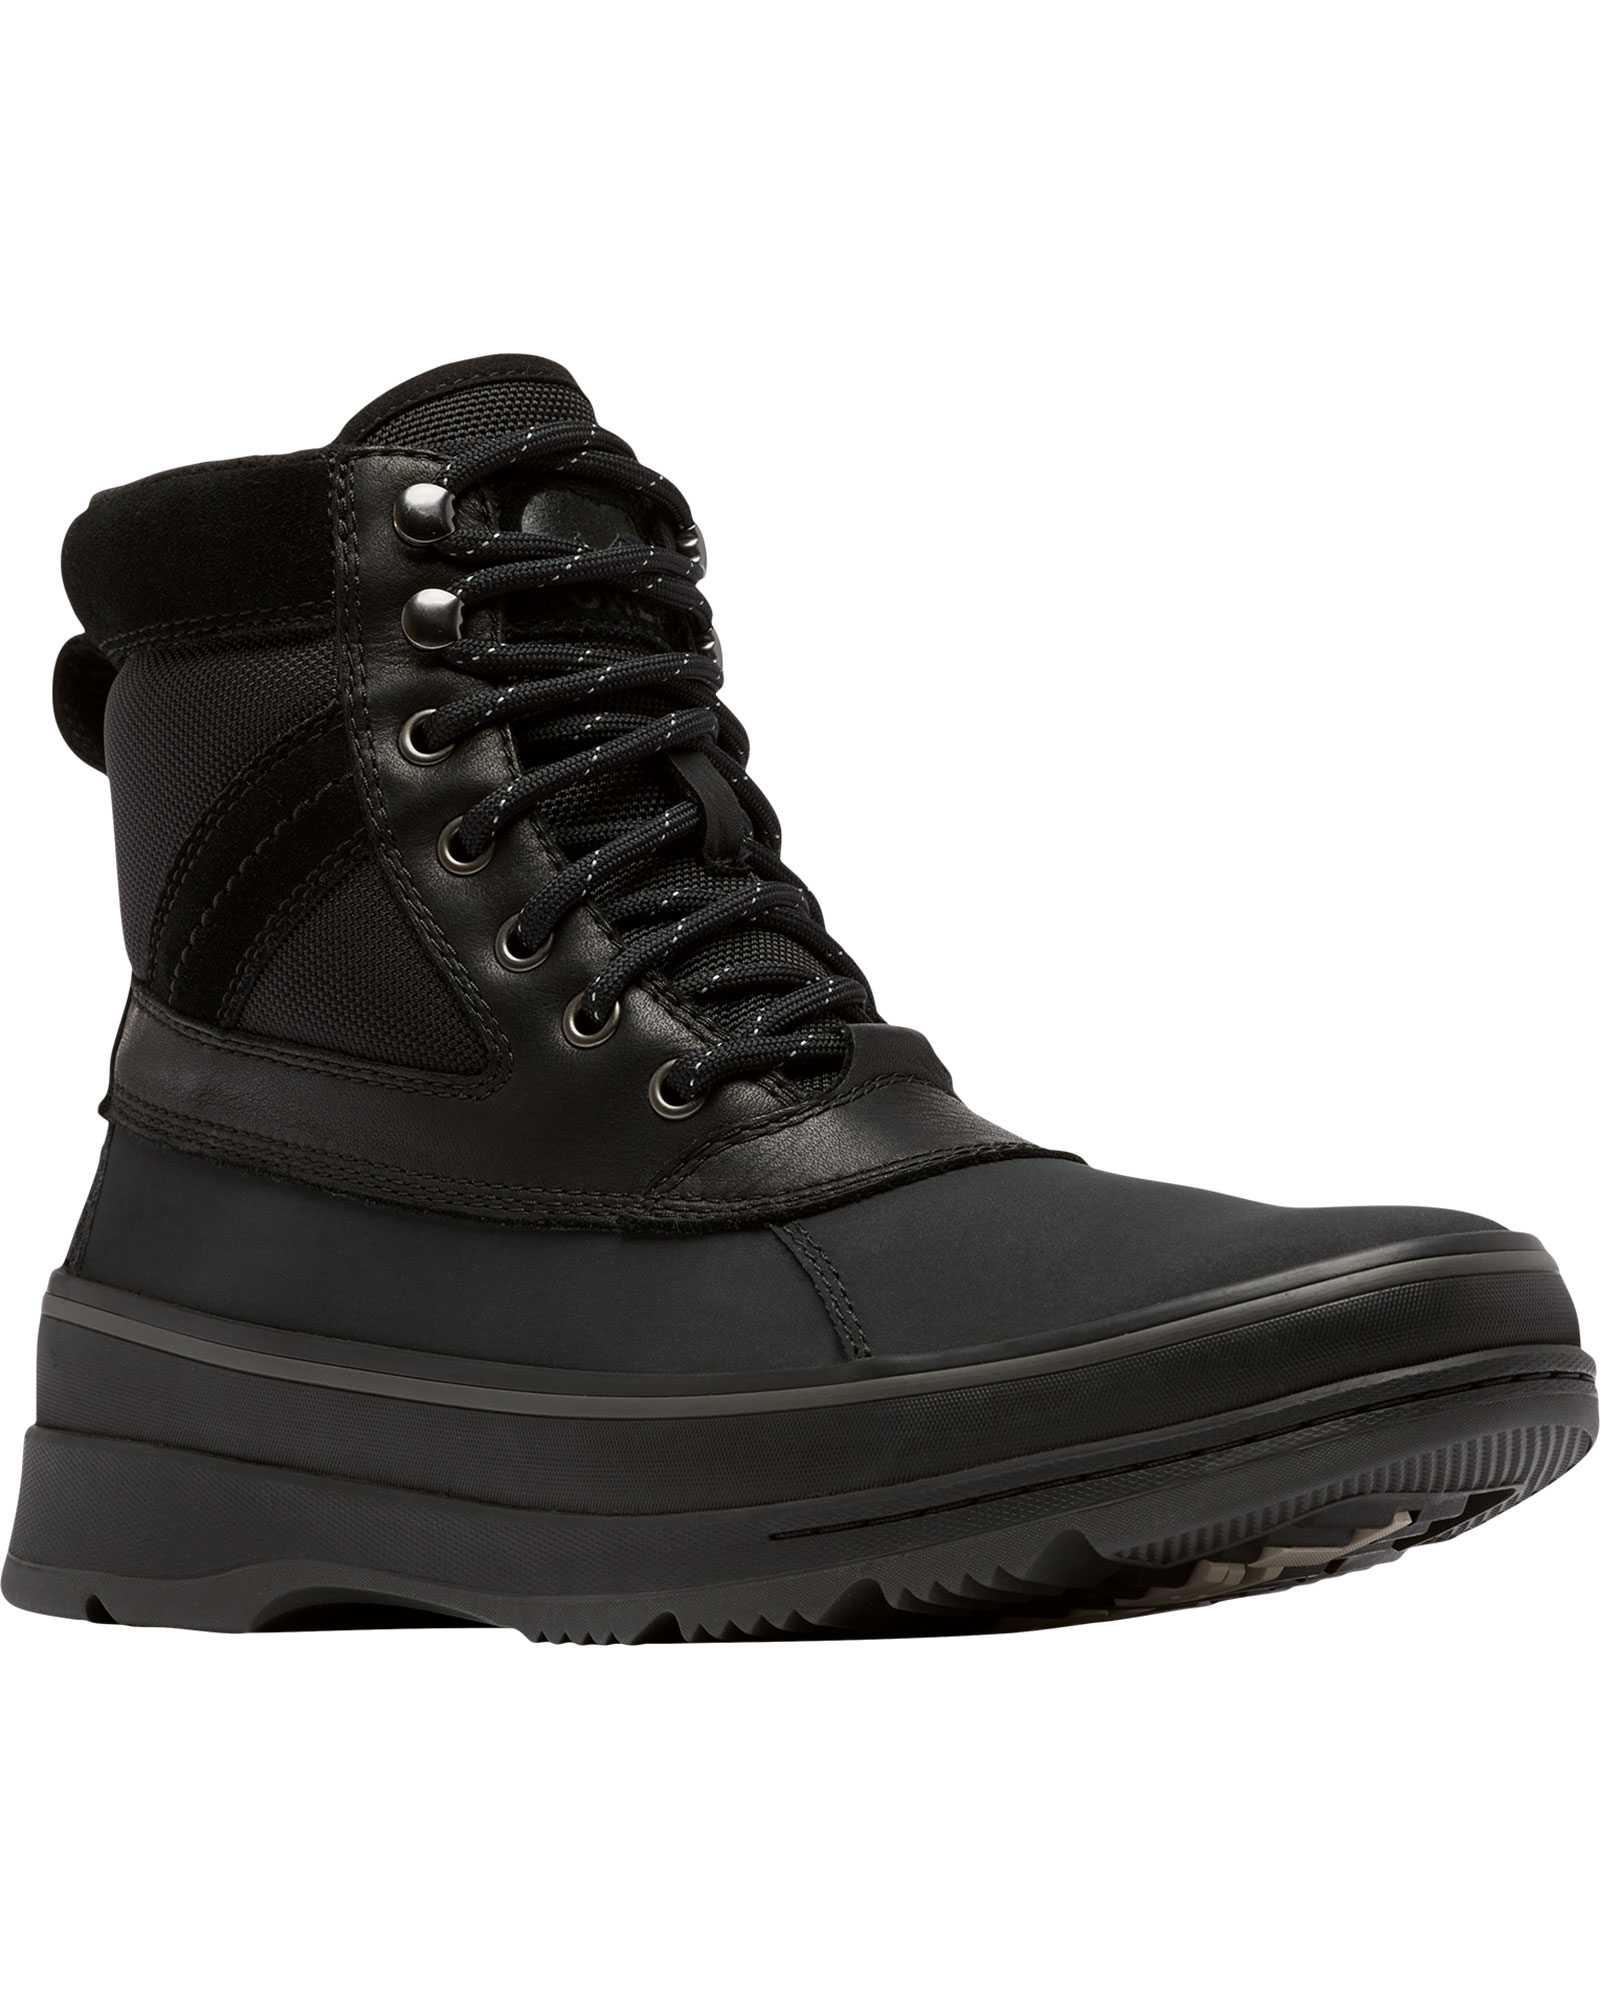 Sorel Ankeny II Waterproof Men’s Boots - Black/Jet UK 10